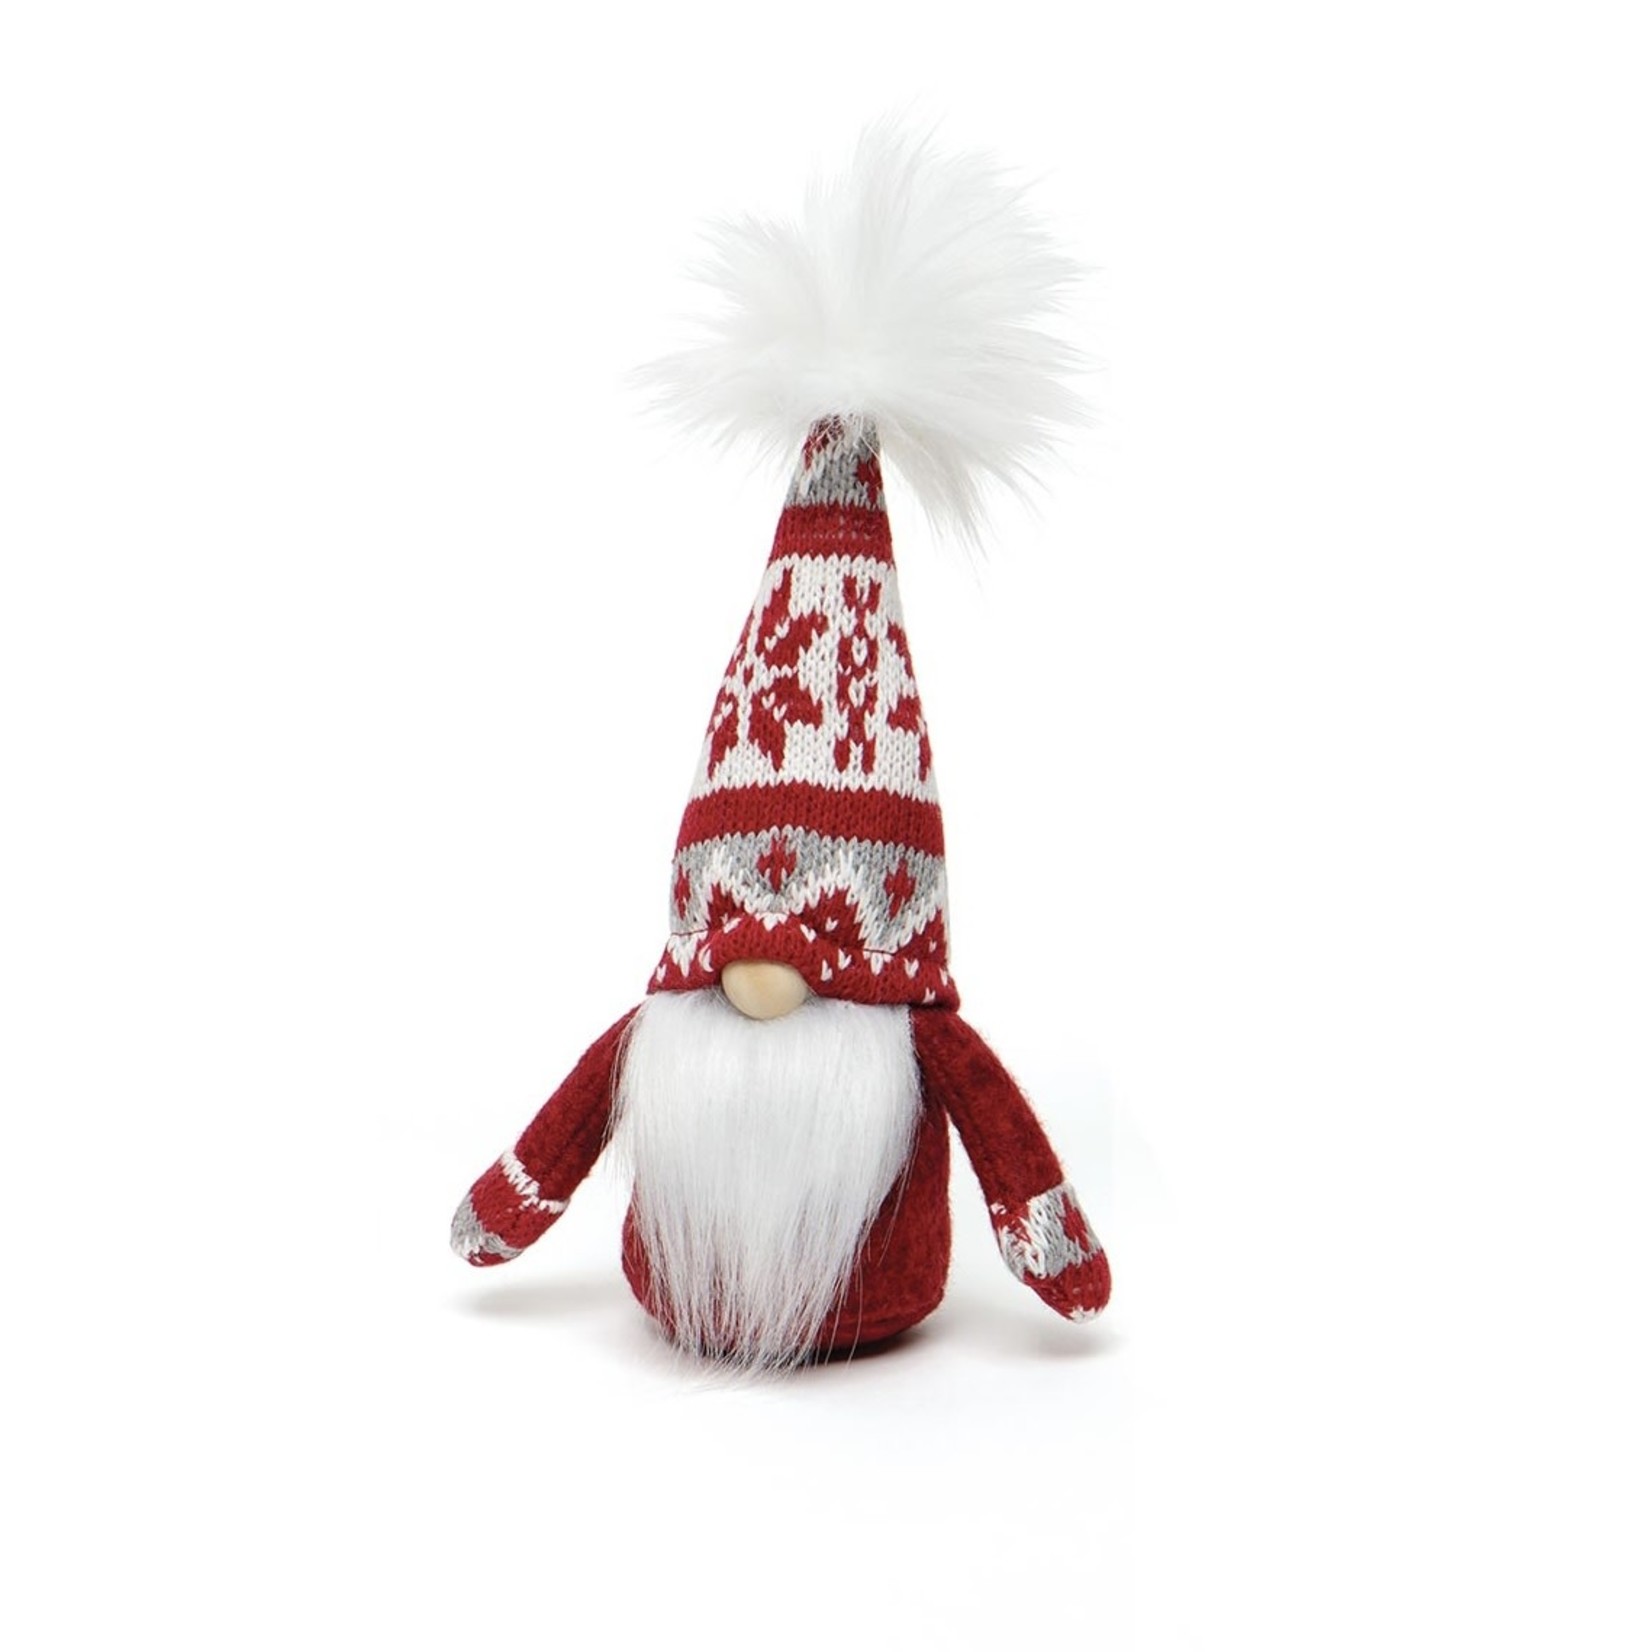 Meravic Finnish Gnome